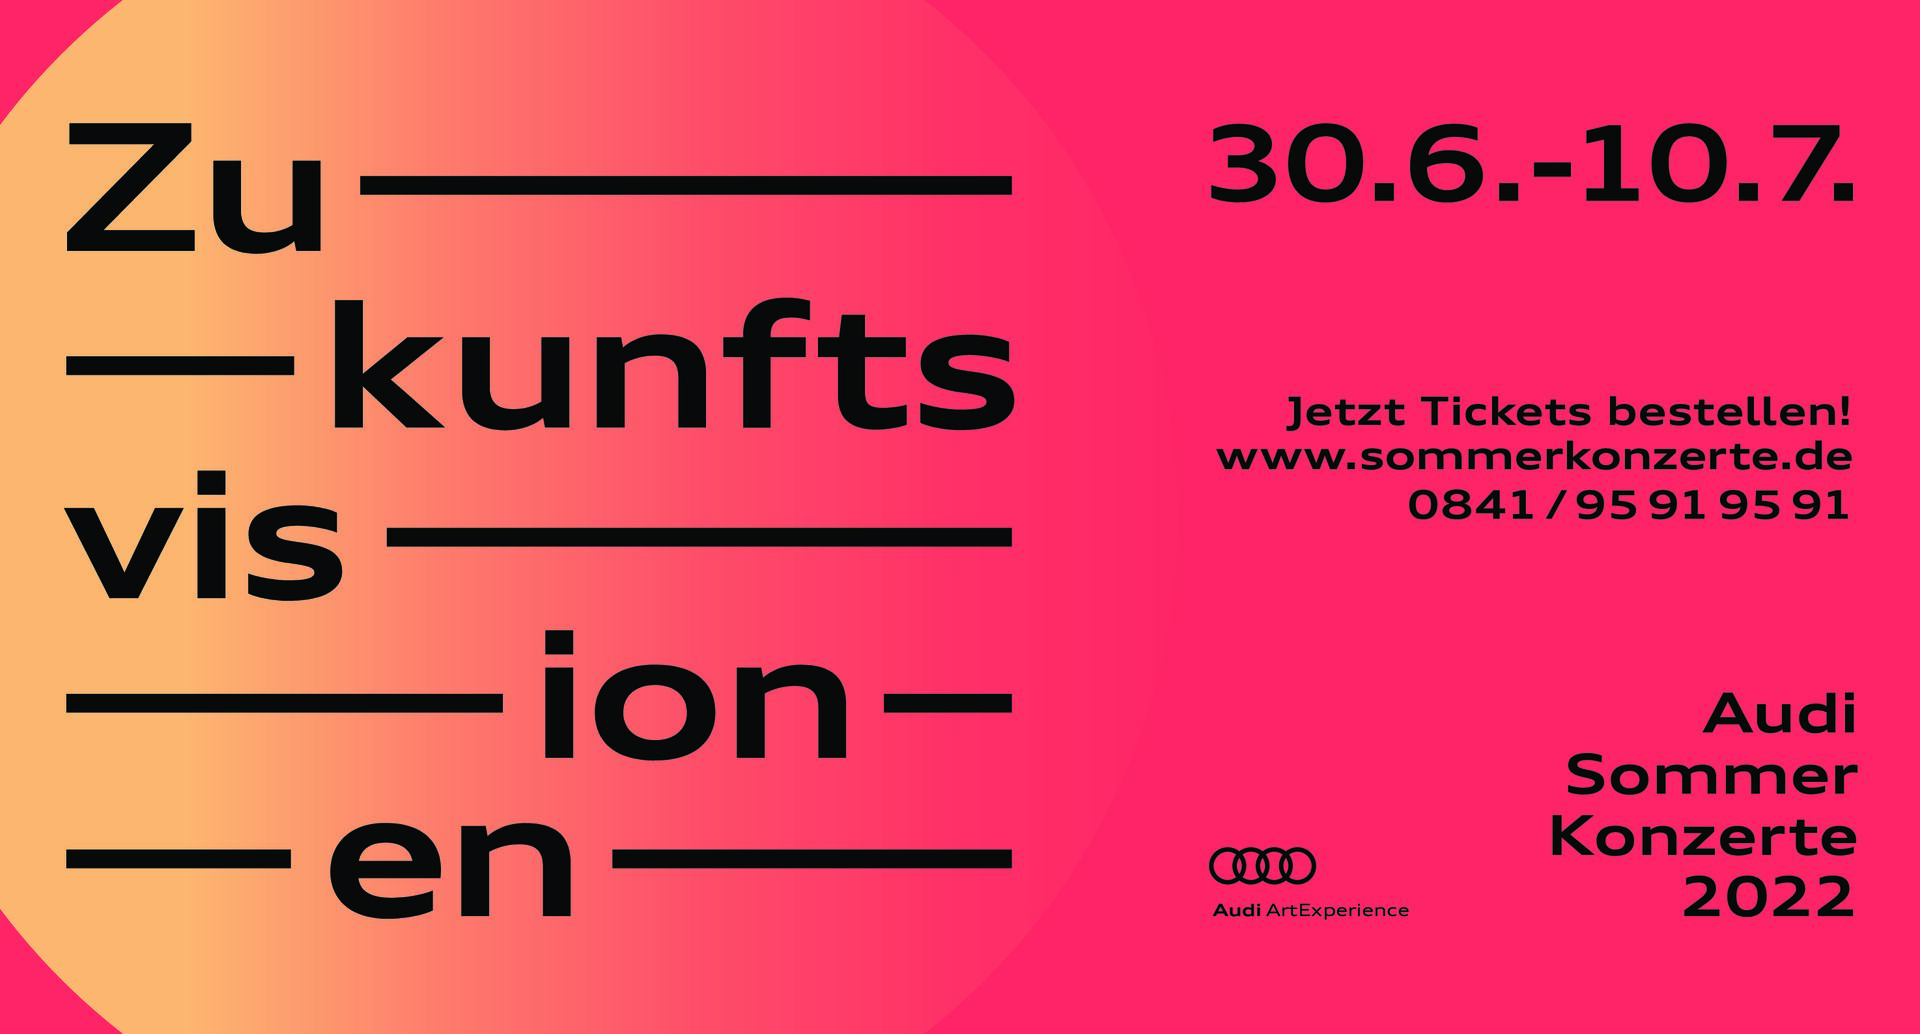 Das Programm der Audi Sommerkonzerte 2022